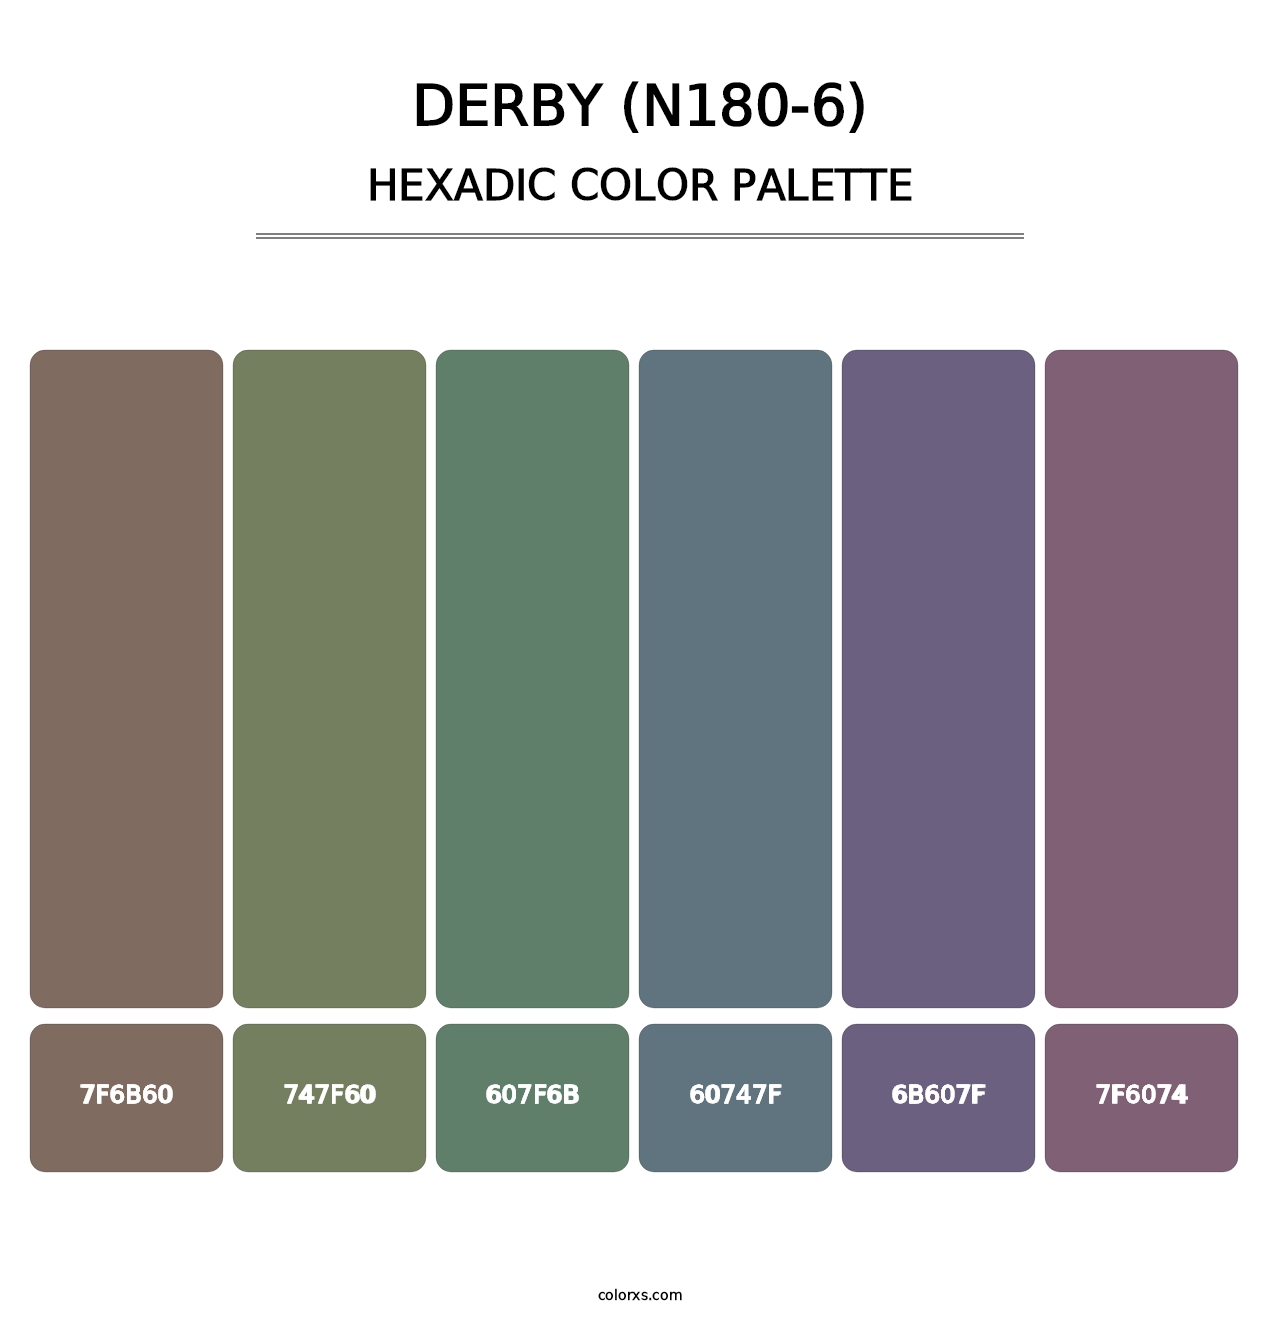 Derby (N180-6) - Hexadic Color Palette